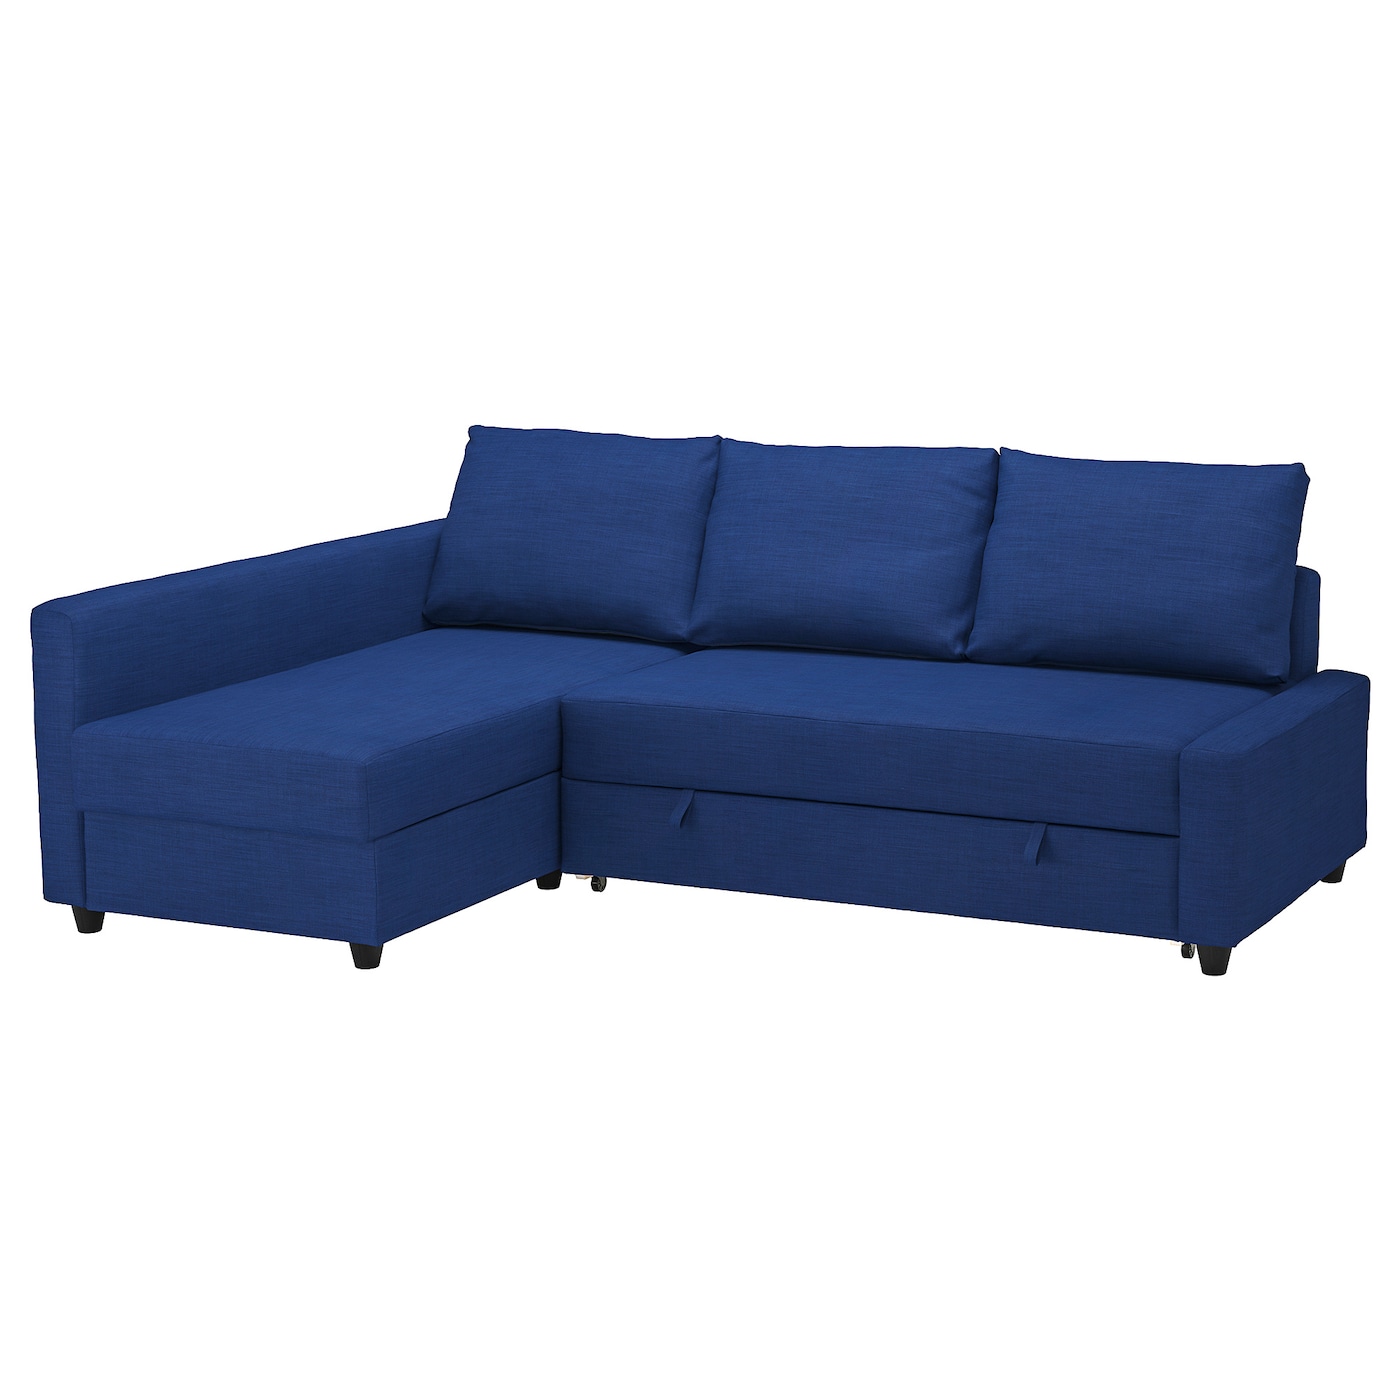 ФРИХЕТЕН Угловой диван-кровать + место для хранения, Скифтебо синий FRIHETEN IKEA нижегородмебель и к диван кровать угловой айрин тд 323